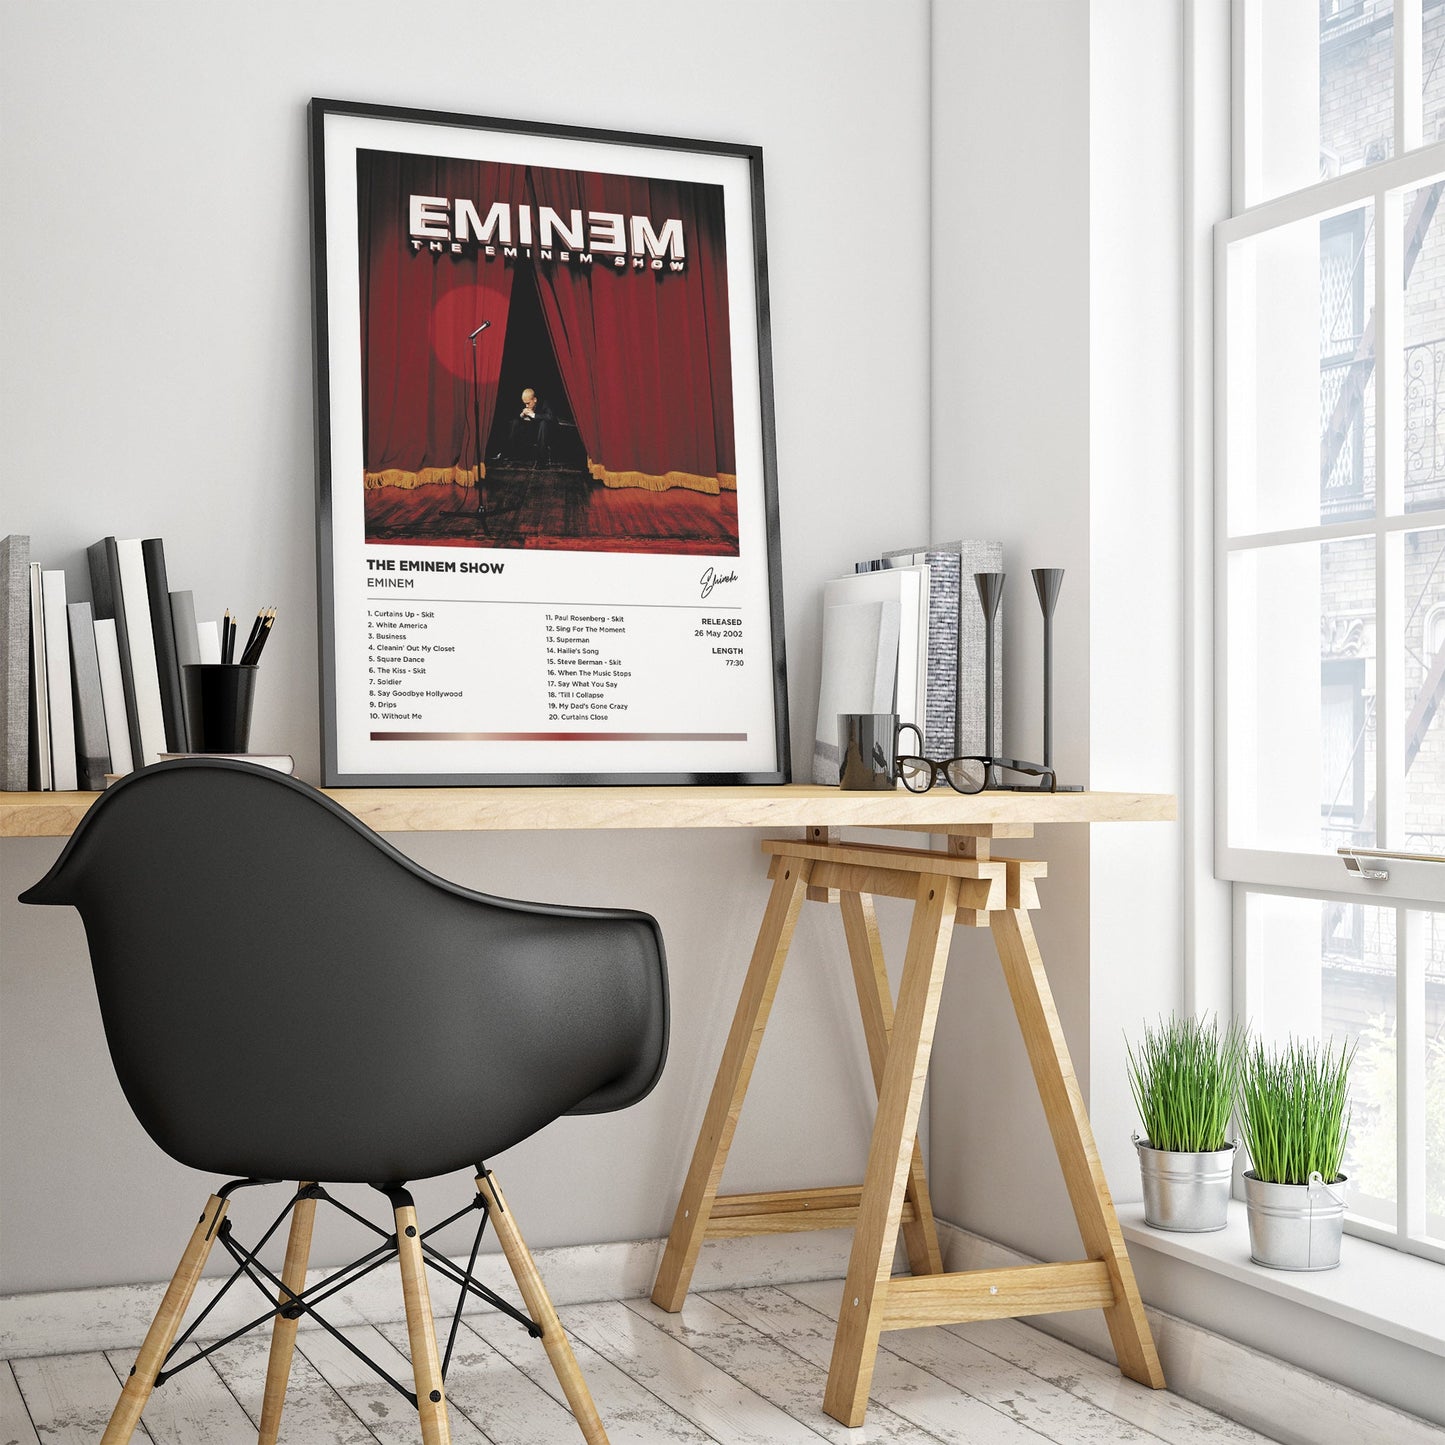 Eminem - The Eminem Show Framed Poster Print | Polaroid Style | Album Cover Artwork